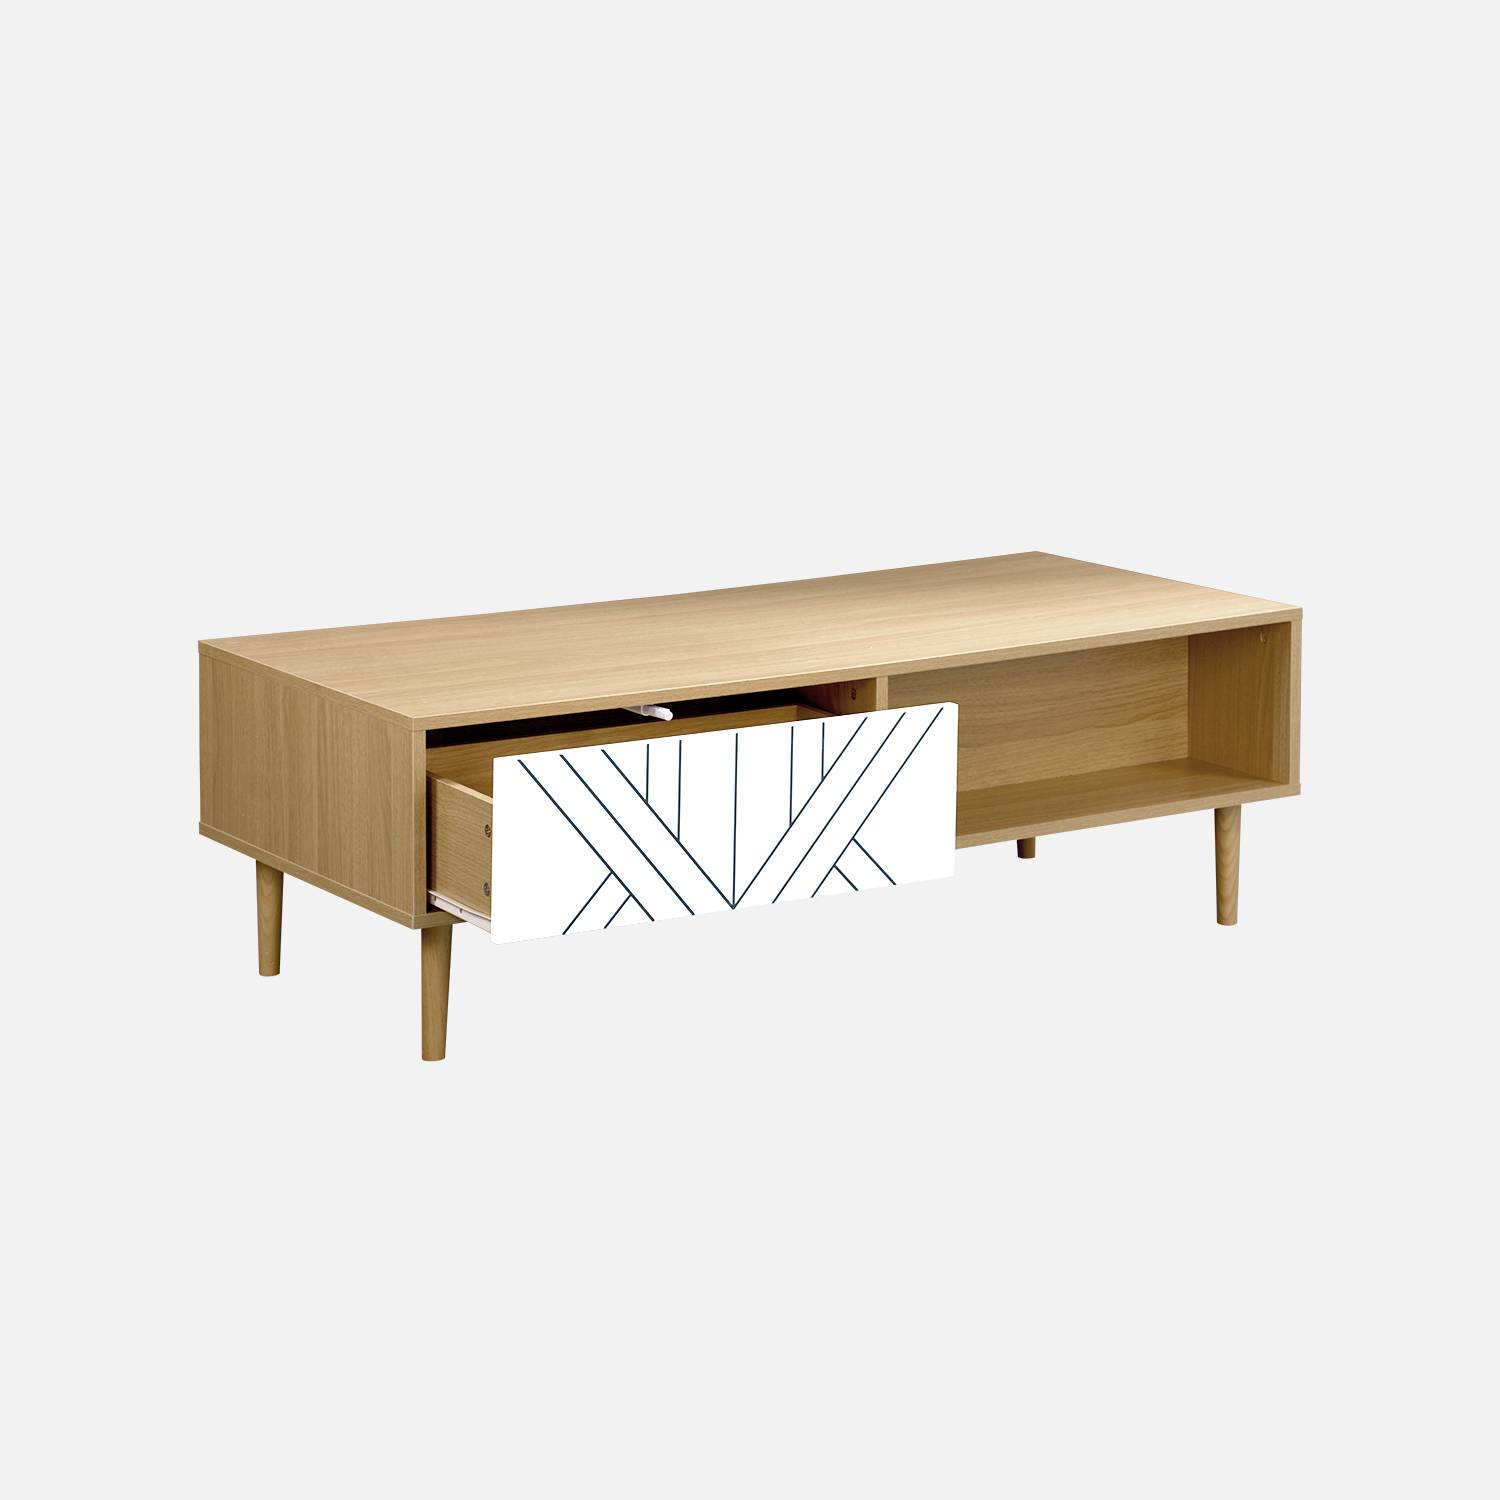 Table basse en décor bois et blanc - Mika - 2 tiroirs, 2 espaces de rangement, L 120 x l 55 x H 40cm Photo4